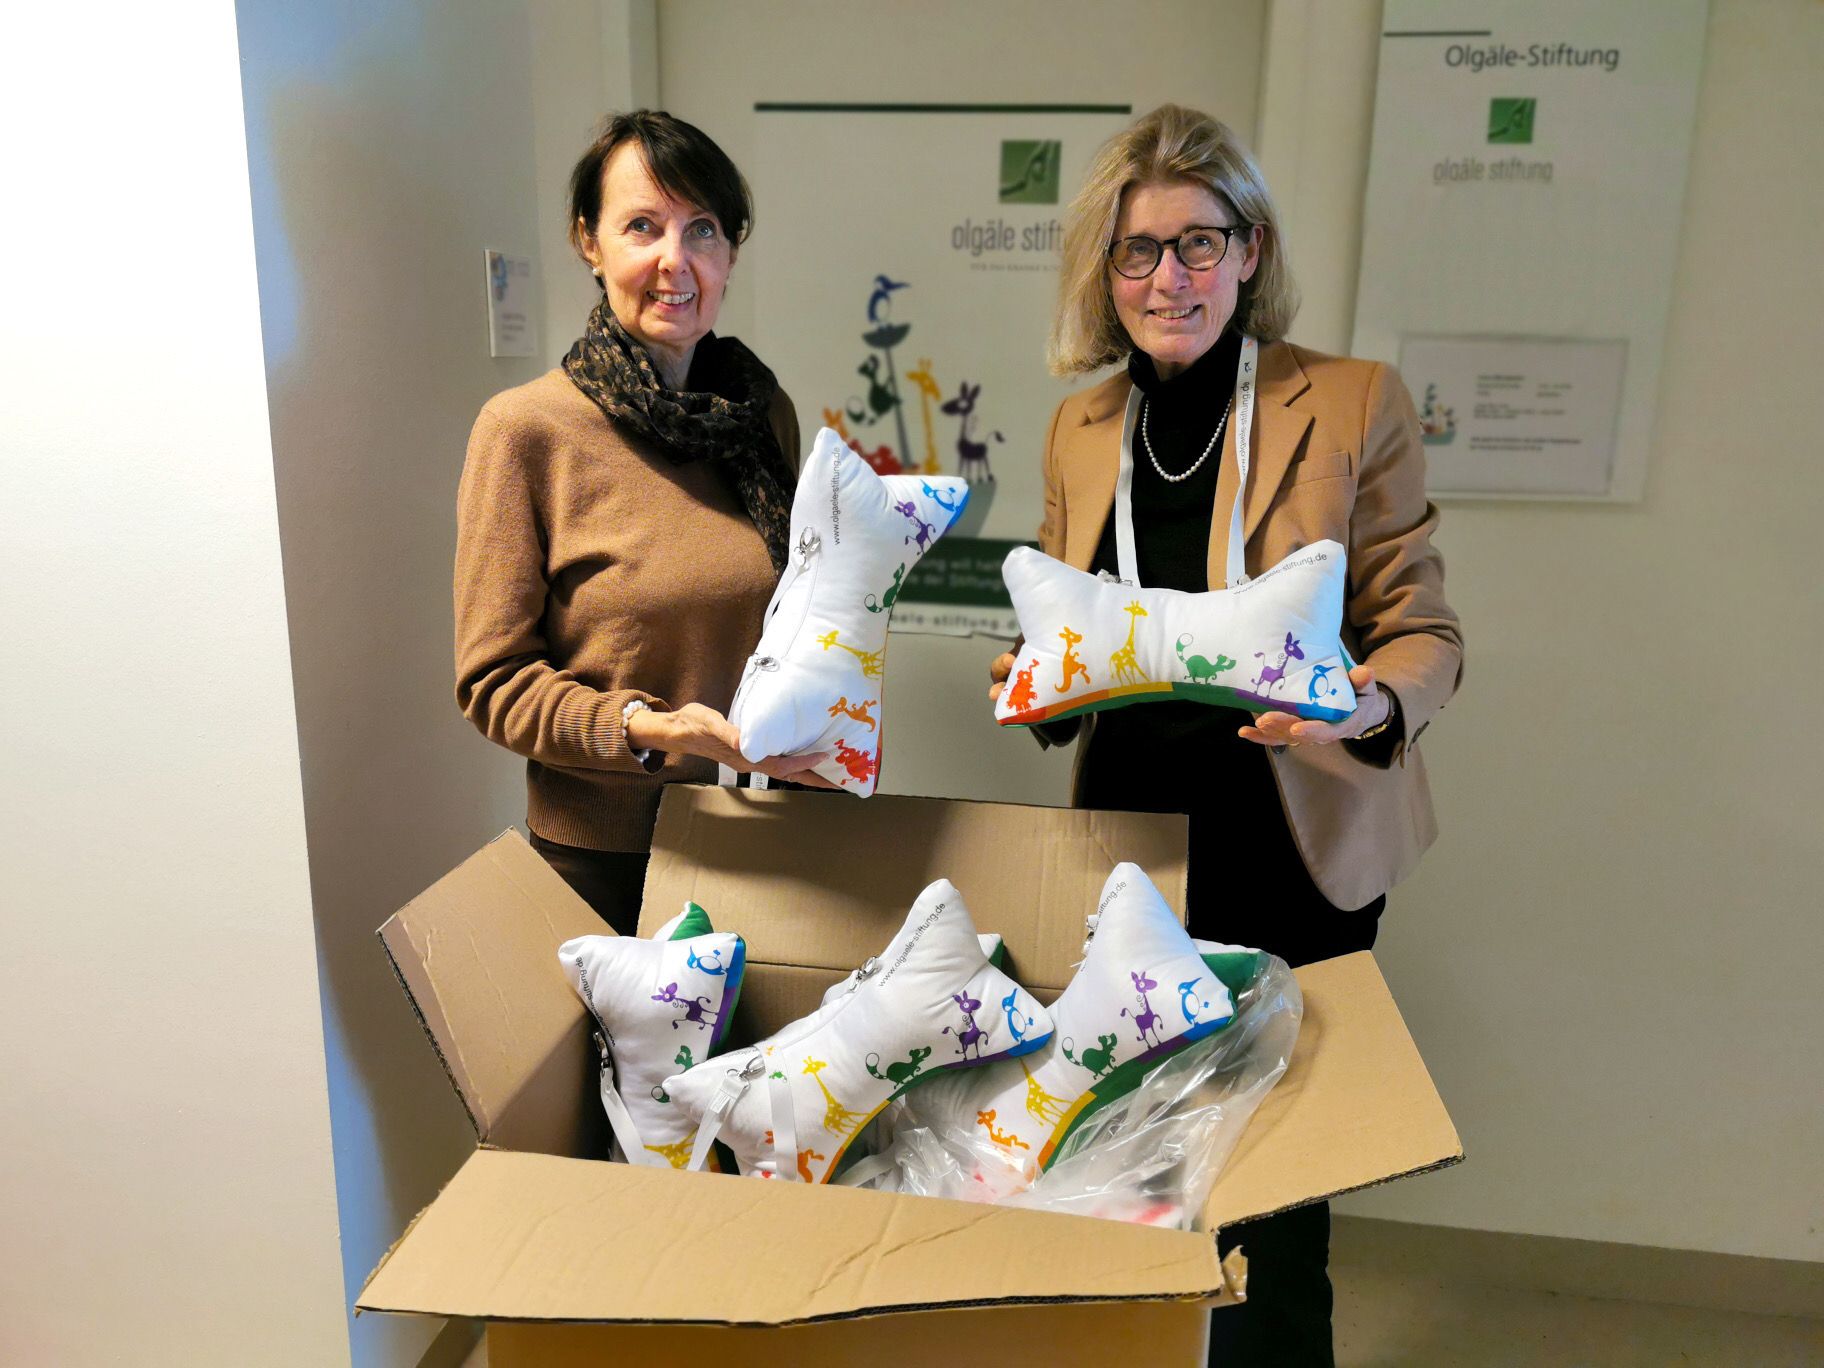 Bild zu Dommer Stuttgarter Fahnenfabrik spendete 50 Nackenkissen an die Olgäle-Stiftung für das kranke Kind e.V.